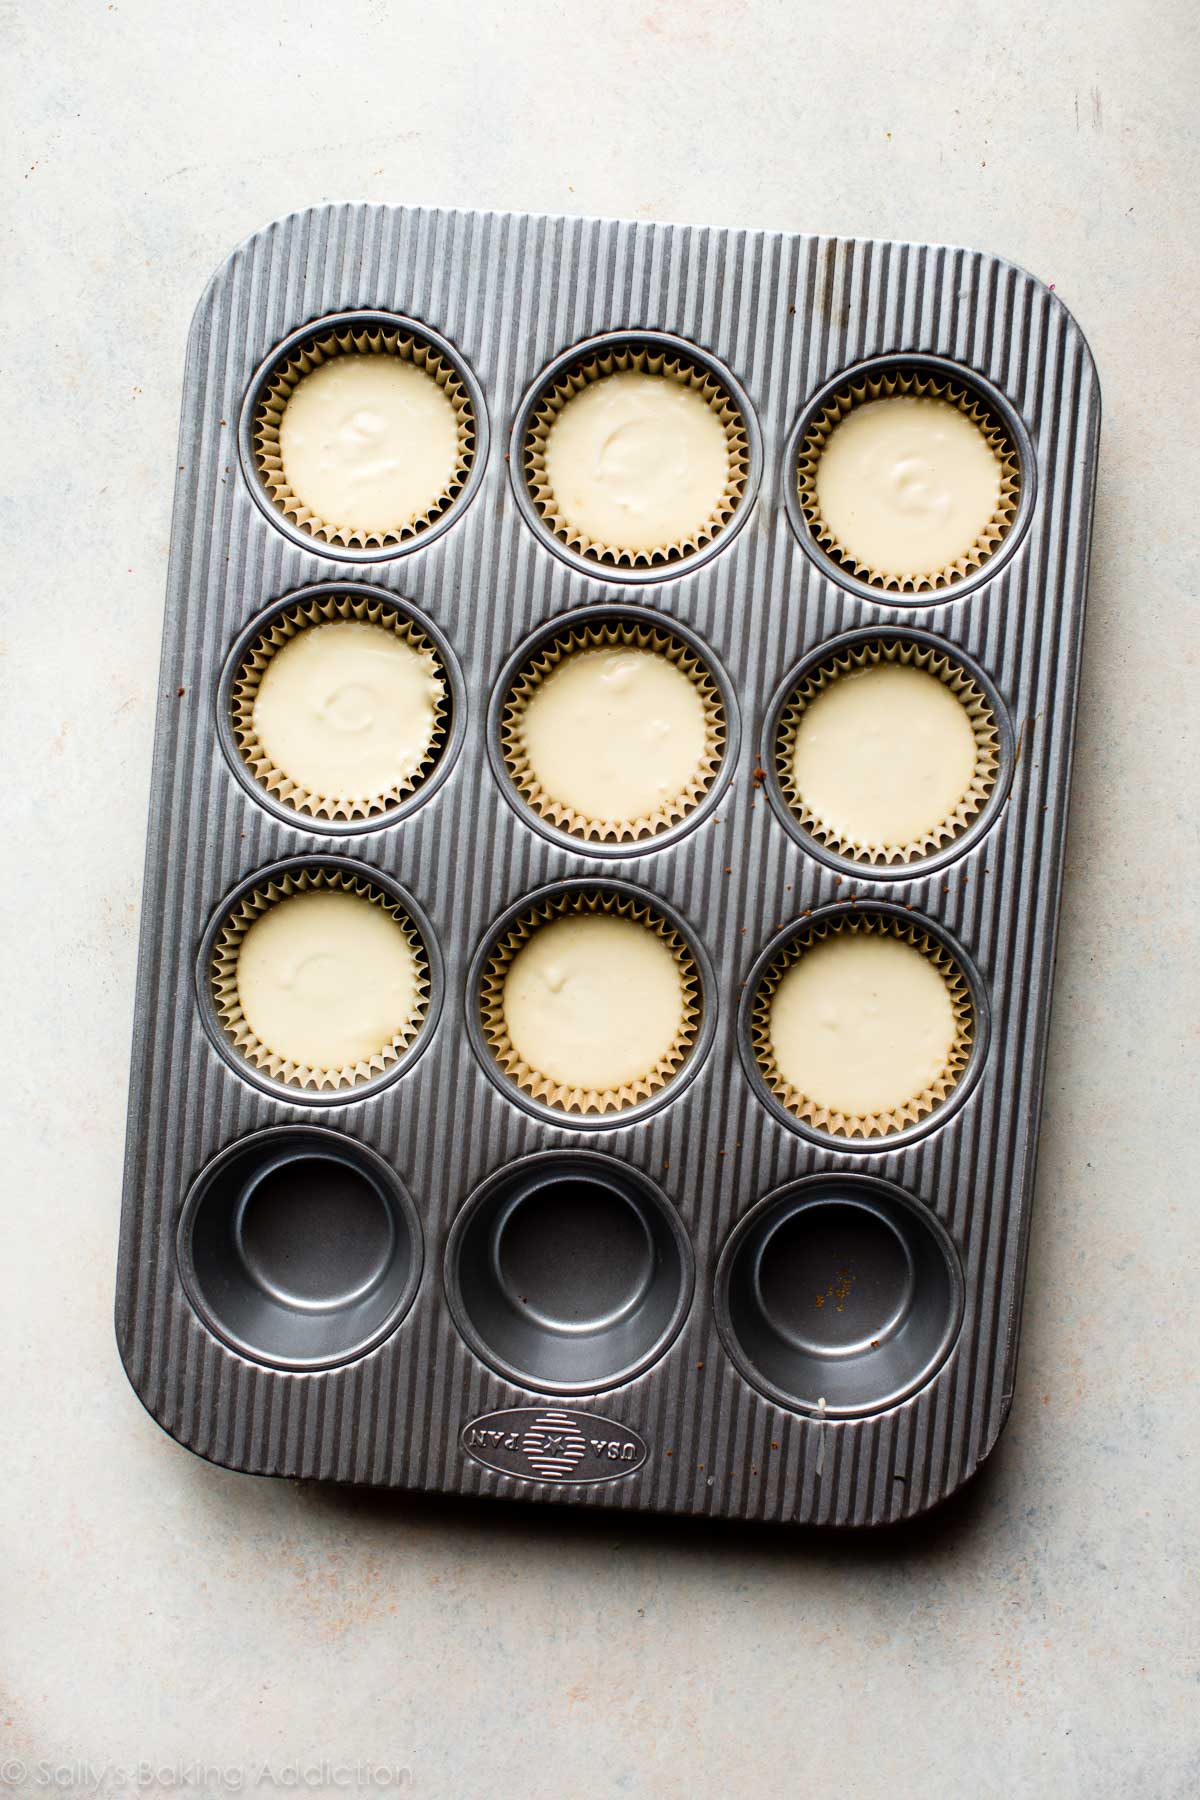 Faites cuire des gâteaux au fromage individuels dans un moule à muffins! Cette recette donne 9 mini-gâteaux au fromage. Recette sur sallysbakingaddiction.com